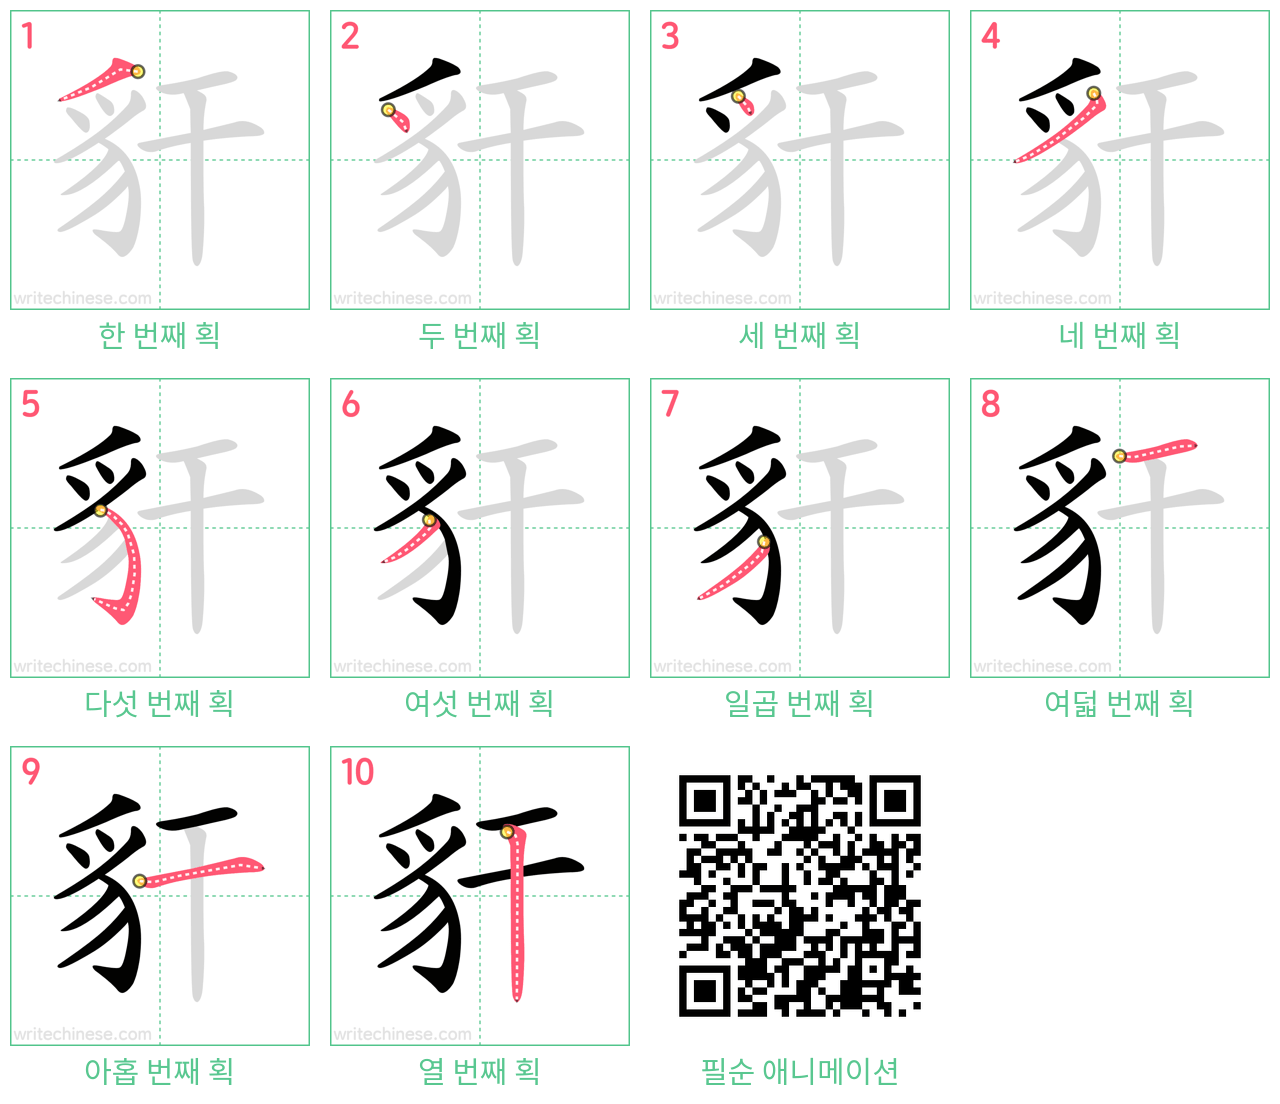 豻 step-by-step stroke order diagrams